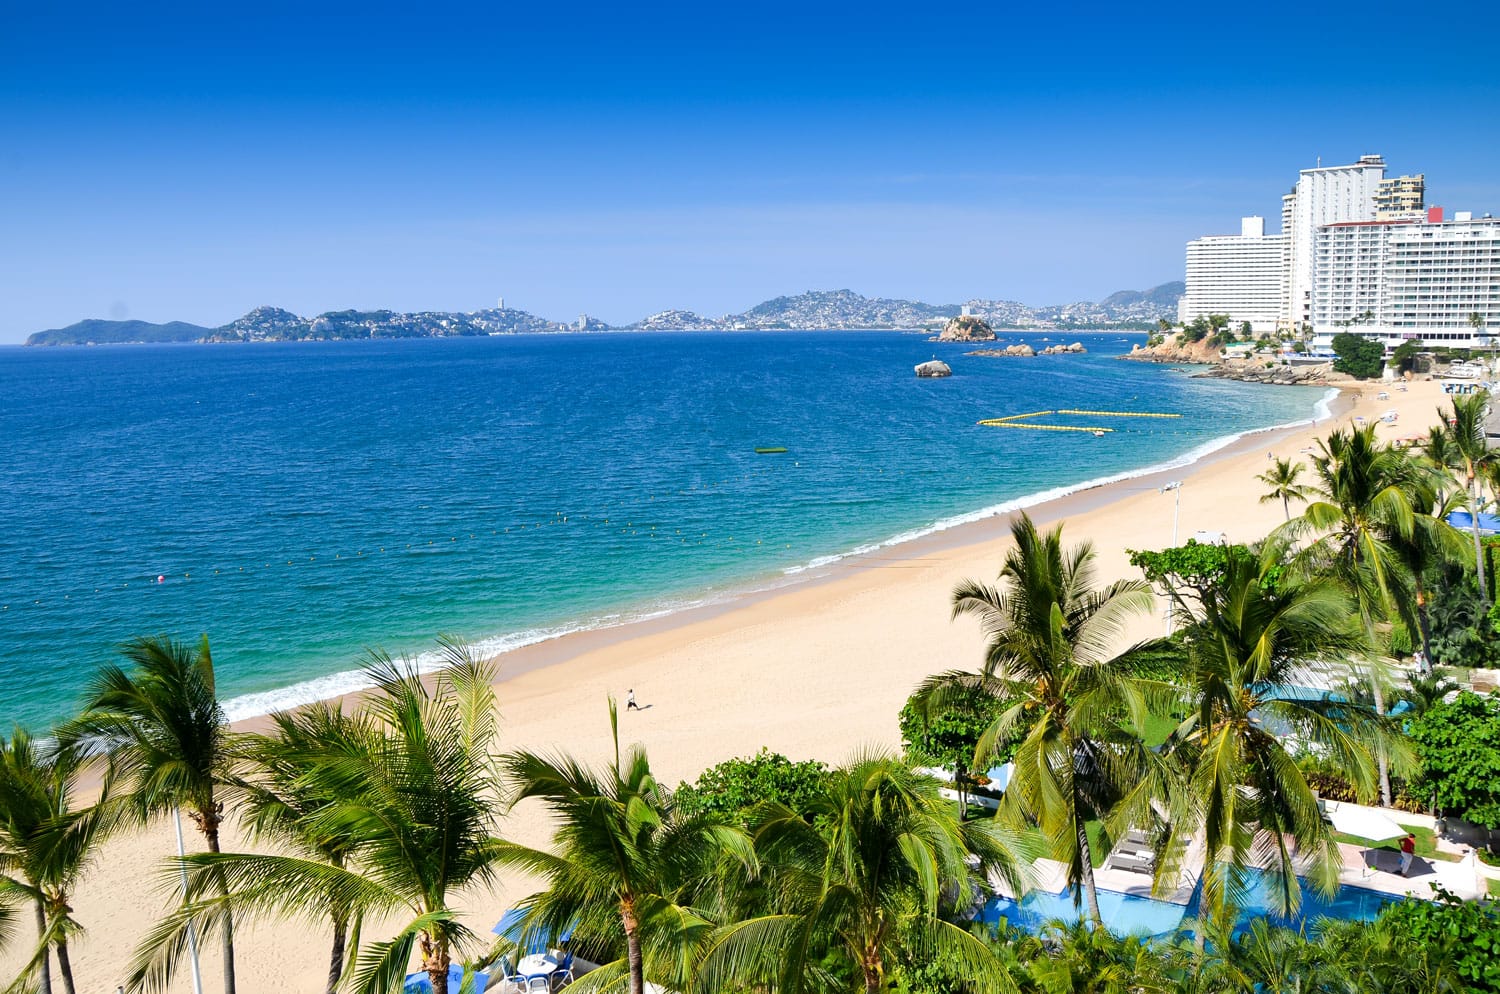 Acapulco Beach in Mexico